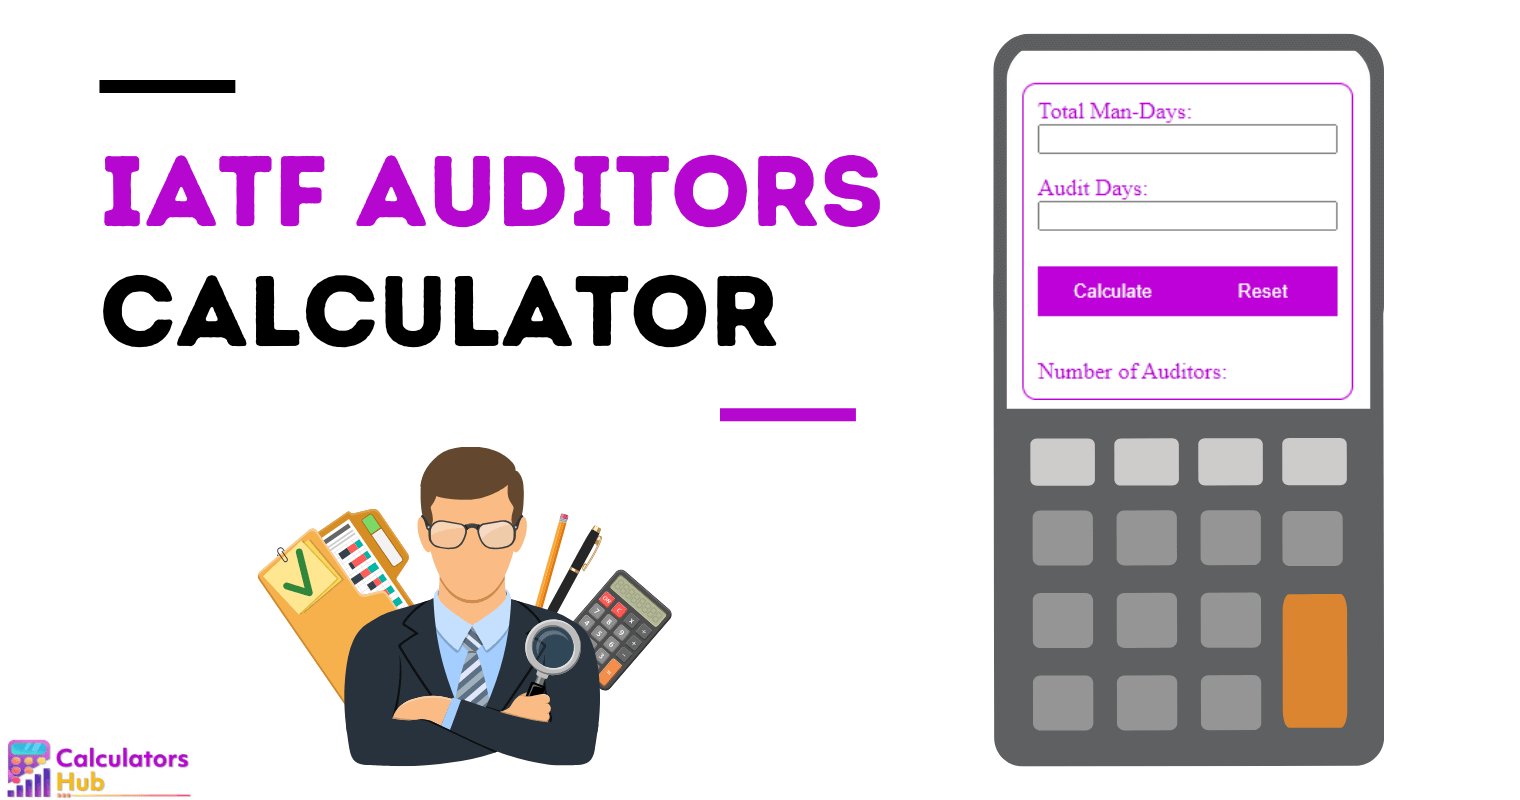 IATF Auditors Calculator